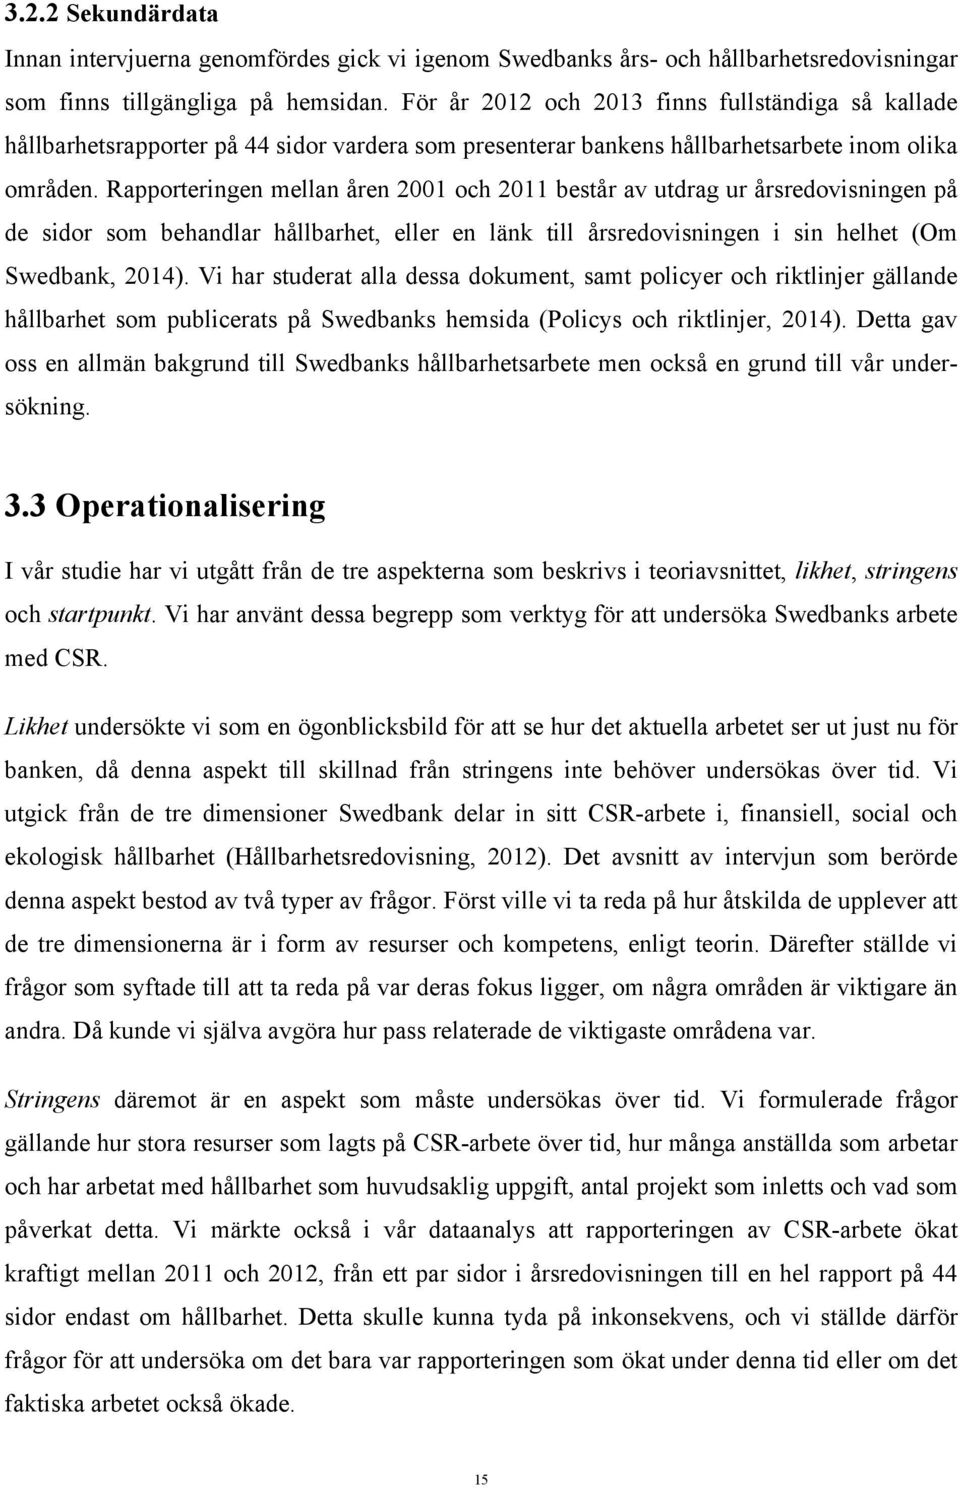 Rapporteringen mellan åren 2001 och 2011 består av utdrag ur årsredovisningen på de sidor som behandlar hållbarhet, eller en länk till årsredovisningen i sin helhet (Om Swedbank, 2014).